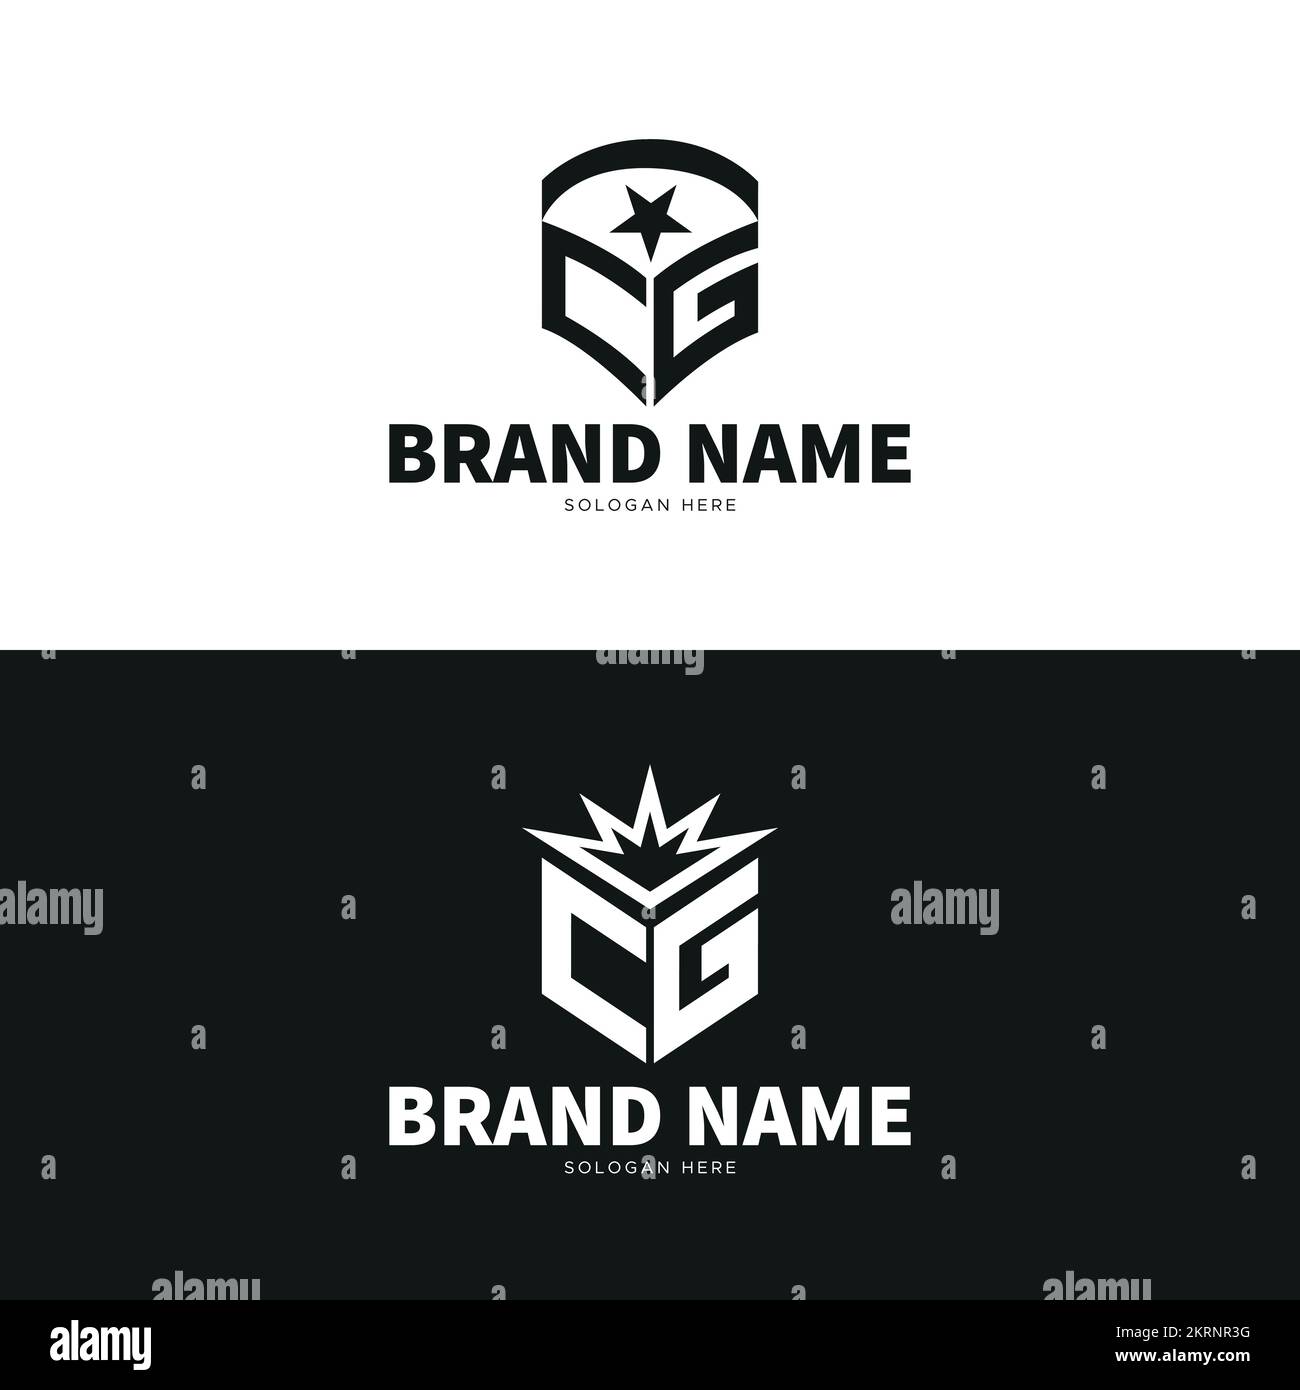 No use for a name band logo font - forum | dafont.com